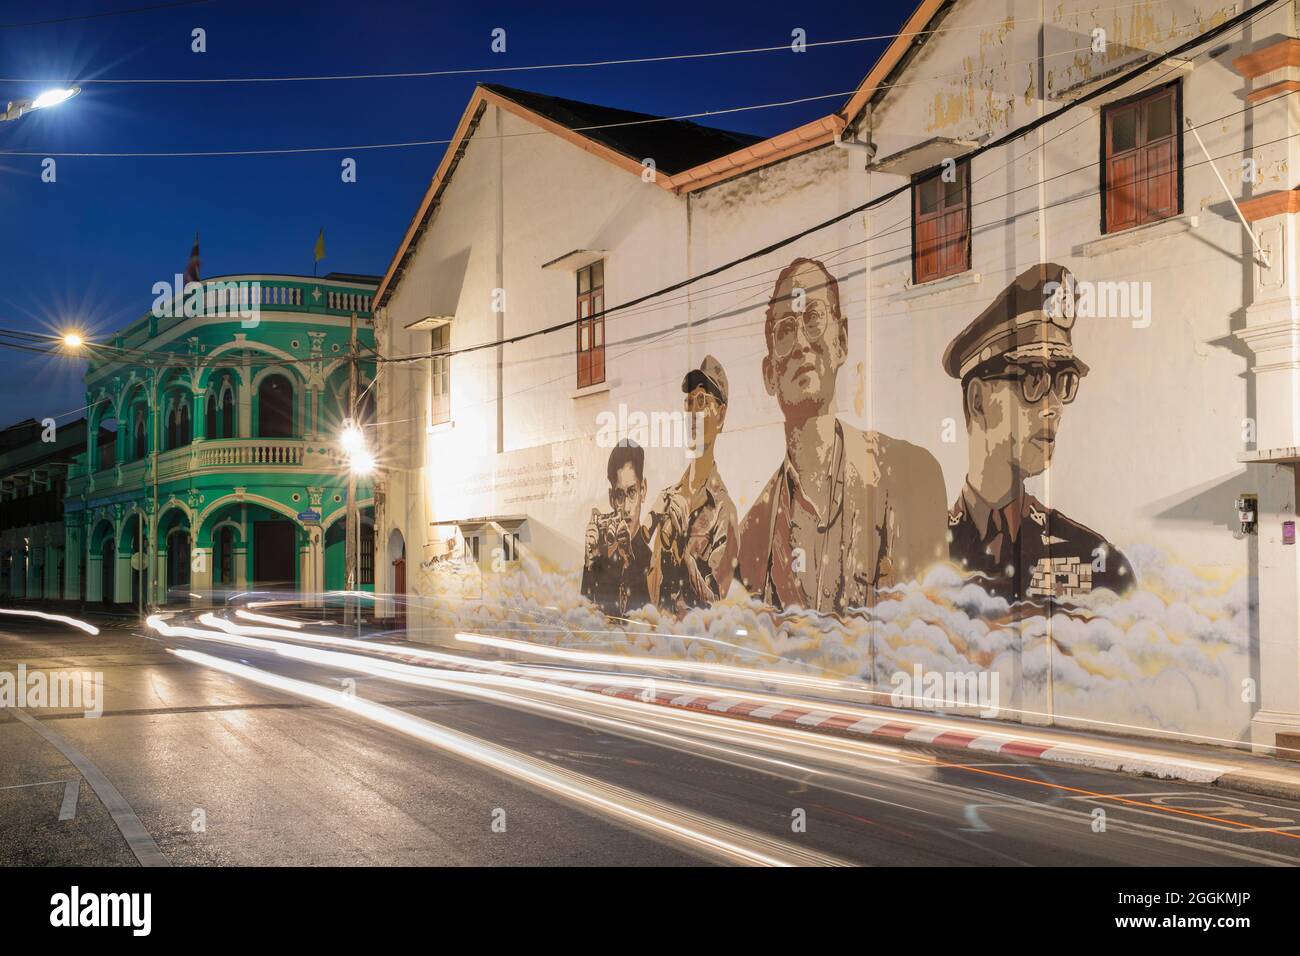 Art de rue avec roi thaïlandais, architecture coloniale portugaise dans la vieille ville de Phuket, Phuket, Thaïlande Banque D'Images